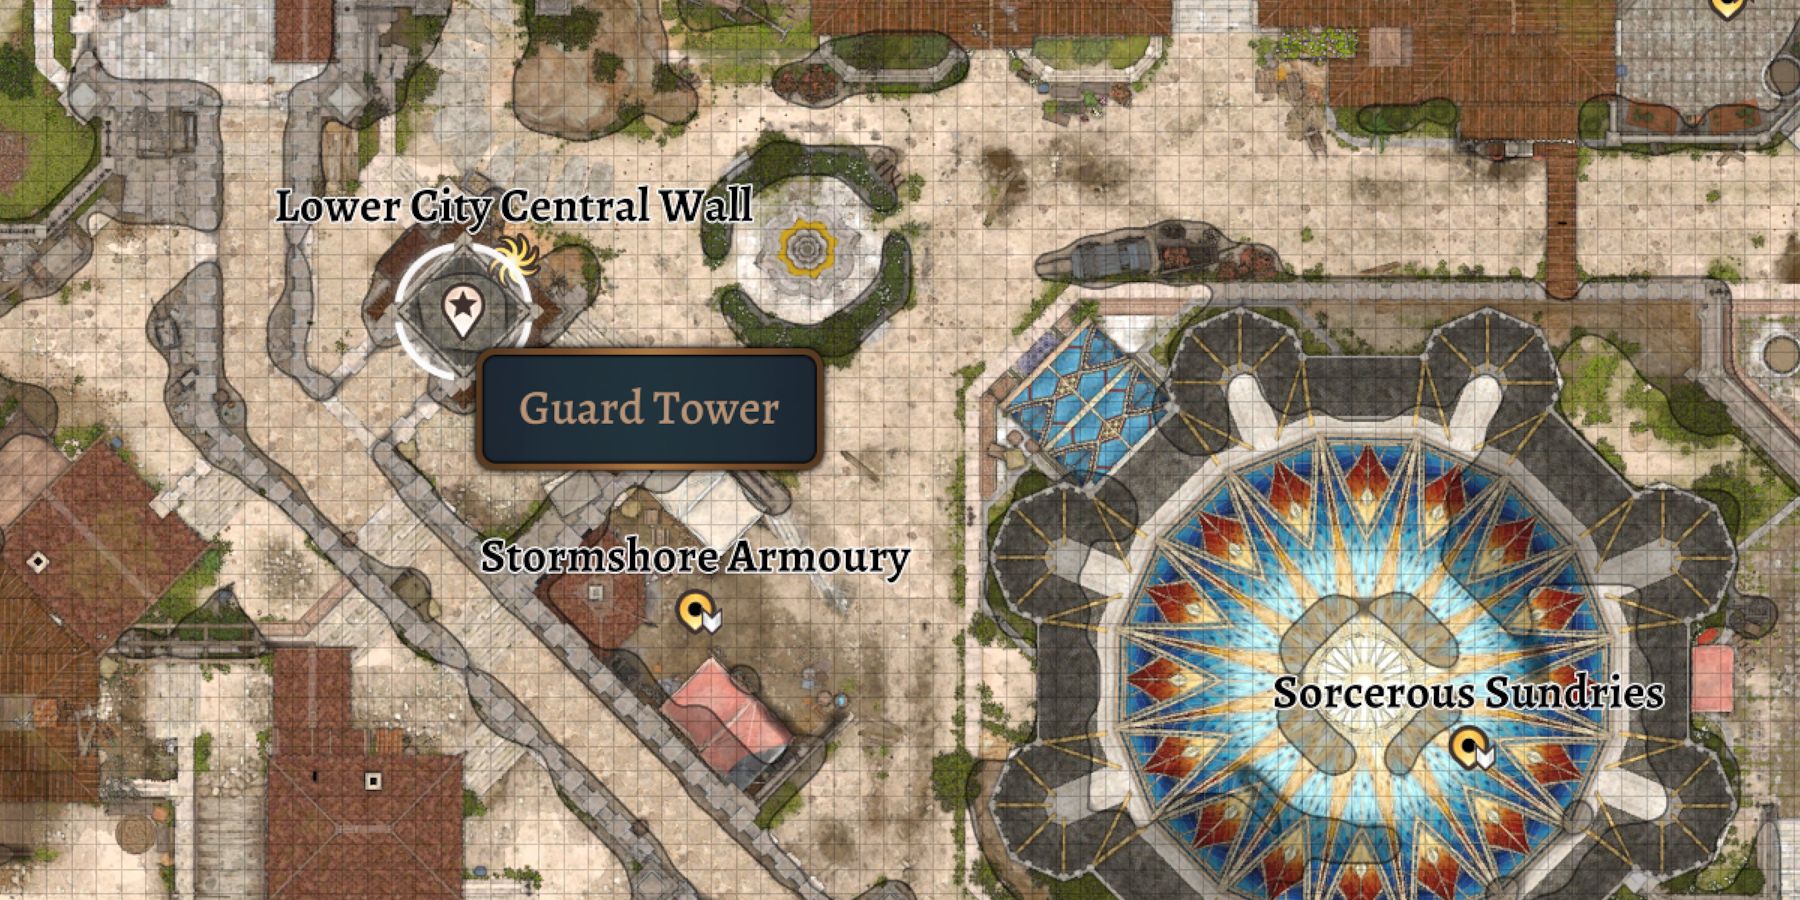 显示下城中央墙快速旅行点附近中央警卫塔位置的地图